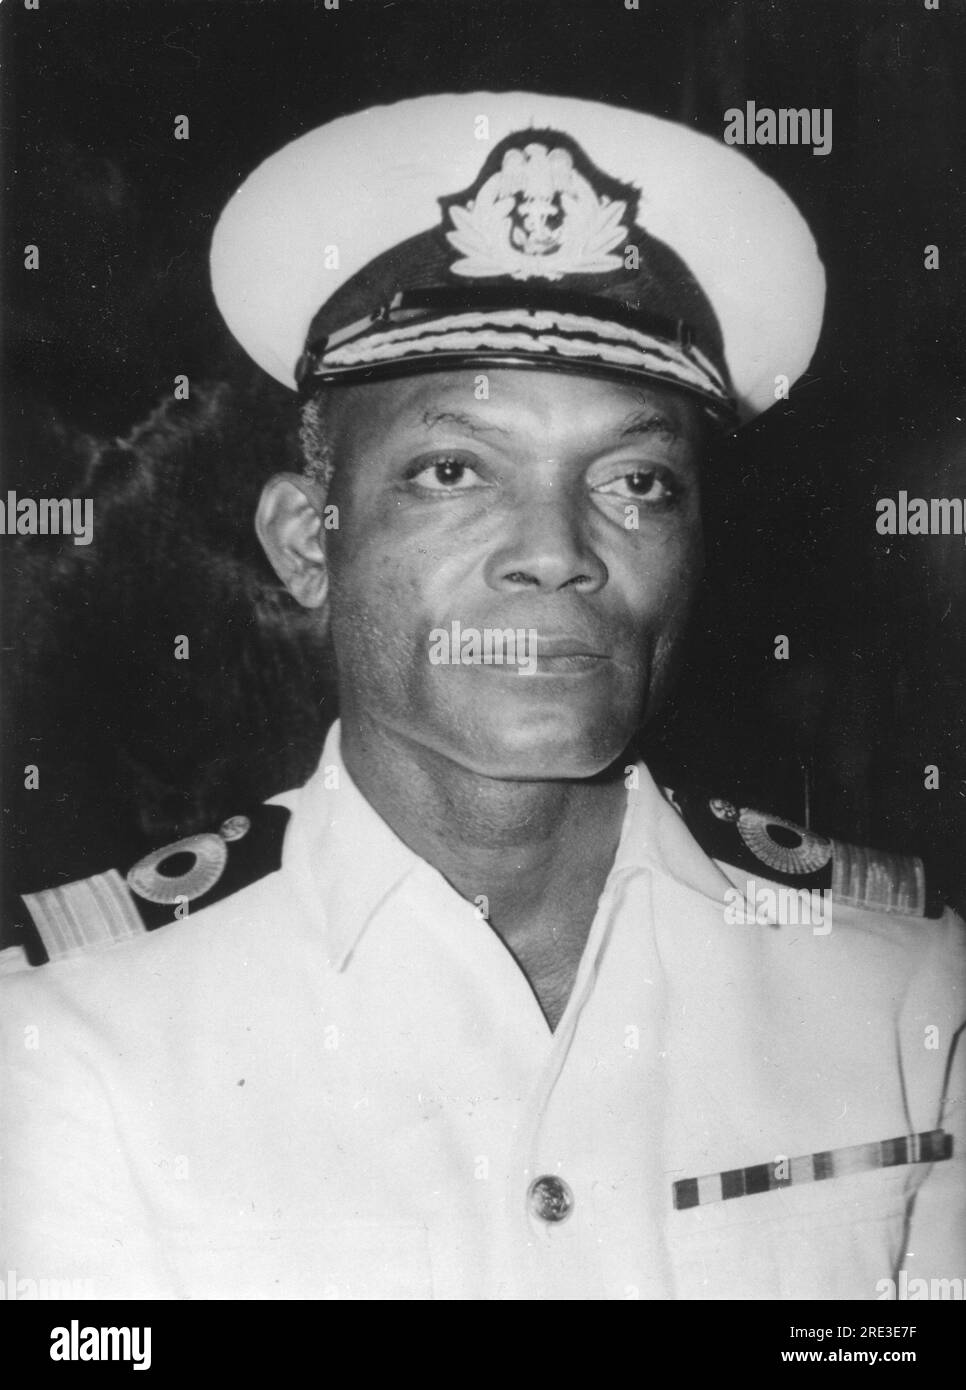 Wey, Joseph Edet Akinwale, 6.3.1918 - 12.12.1991, officier naval nigérian, INFO-AUTORISATION-DROITS-SUPPLÉMENTAIRES-NON-DISPONIBLE Banque D'Images